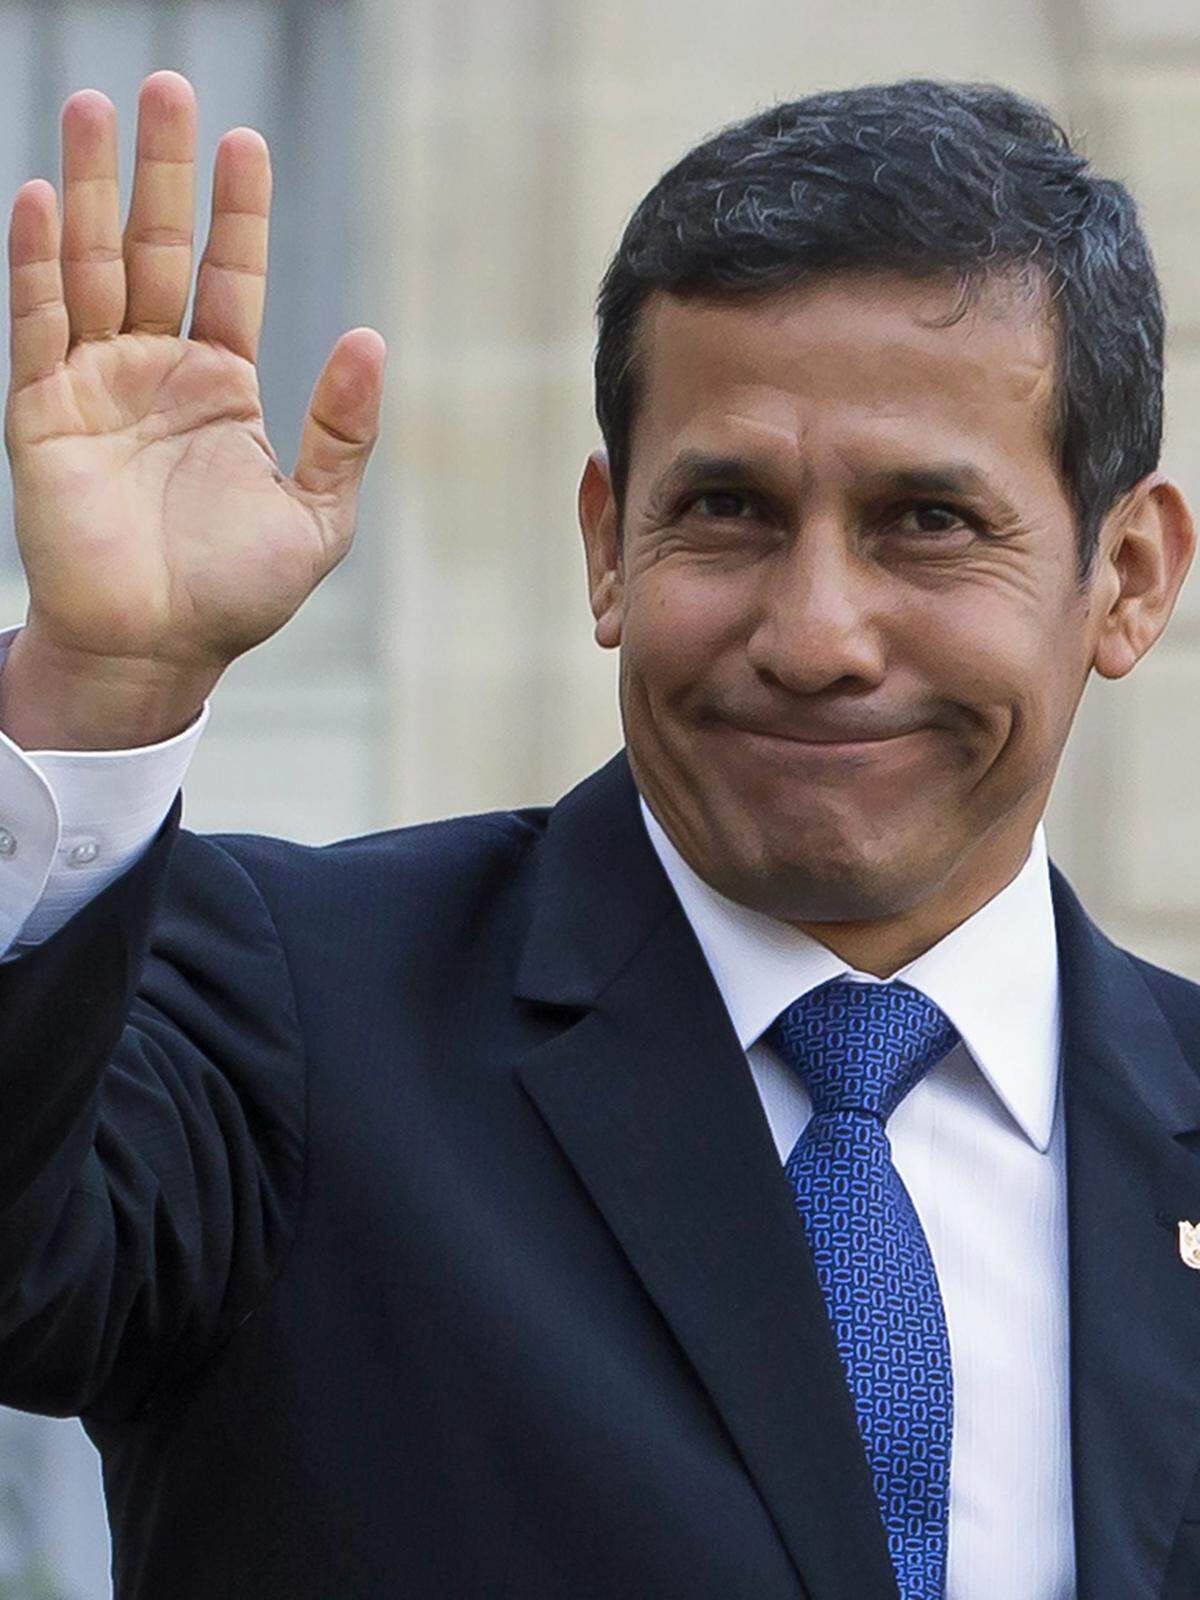 Seit 2011 heißt Perus Präsident Ollanta Humala. Der 50-jährige Linksnationalist nennt seinen vorsichtigen Reformkurs "Wandel ohne Destabilisierung". In seine Regierungsmannschaft nahm er neben linken auch liberale und konservative Politiker auf.